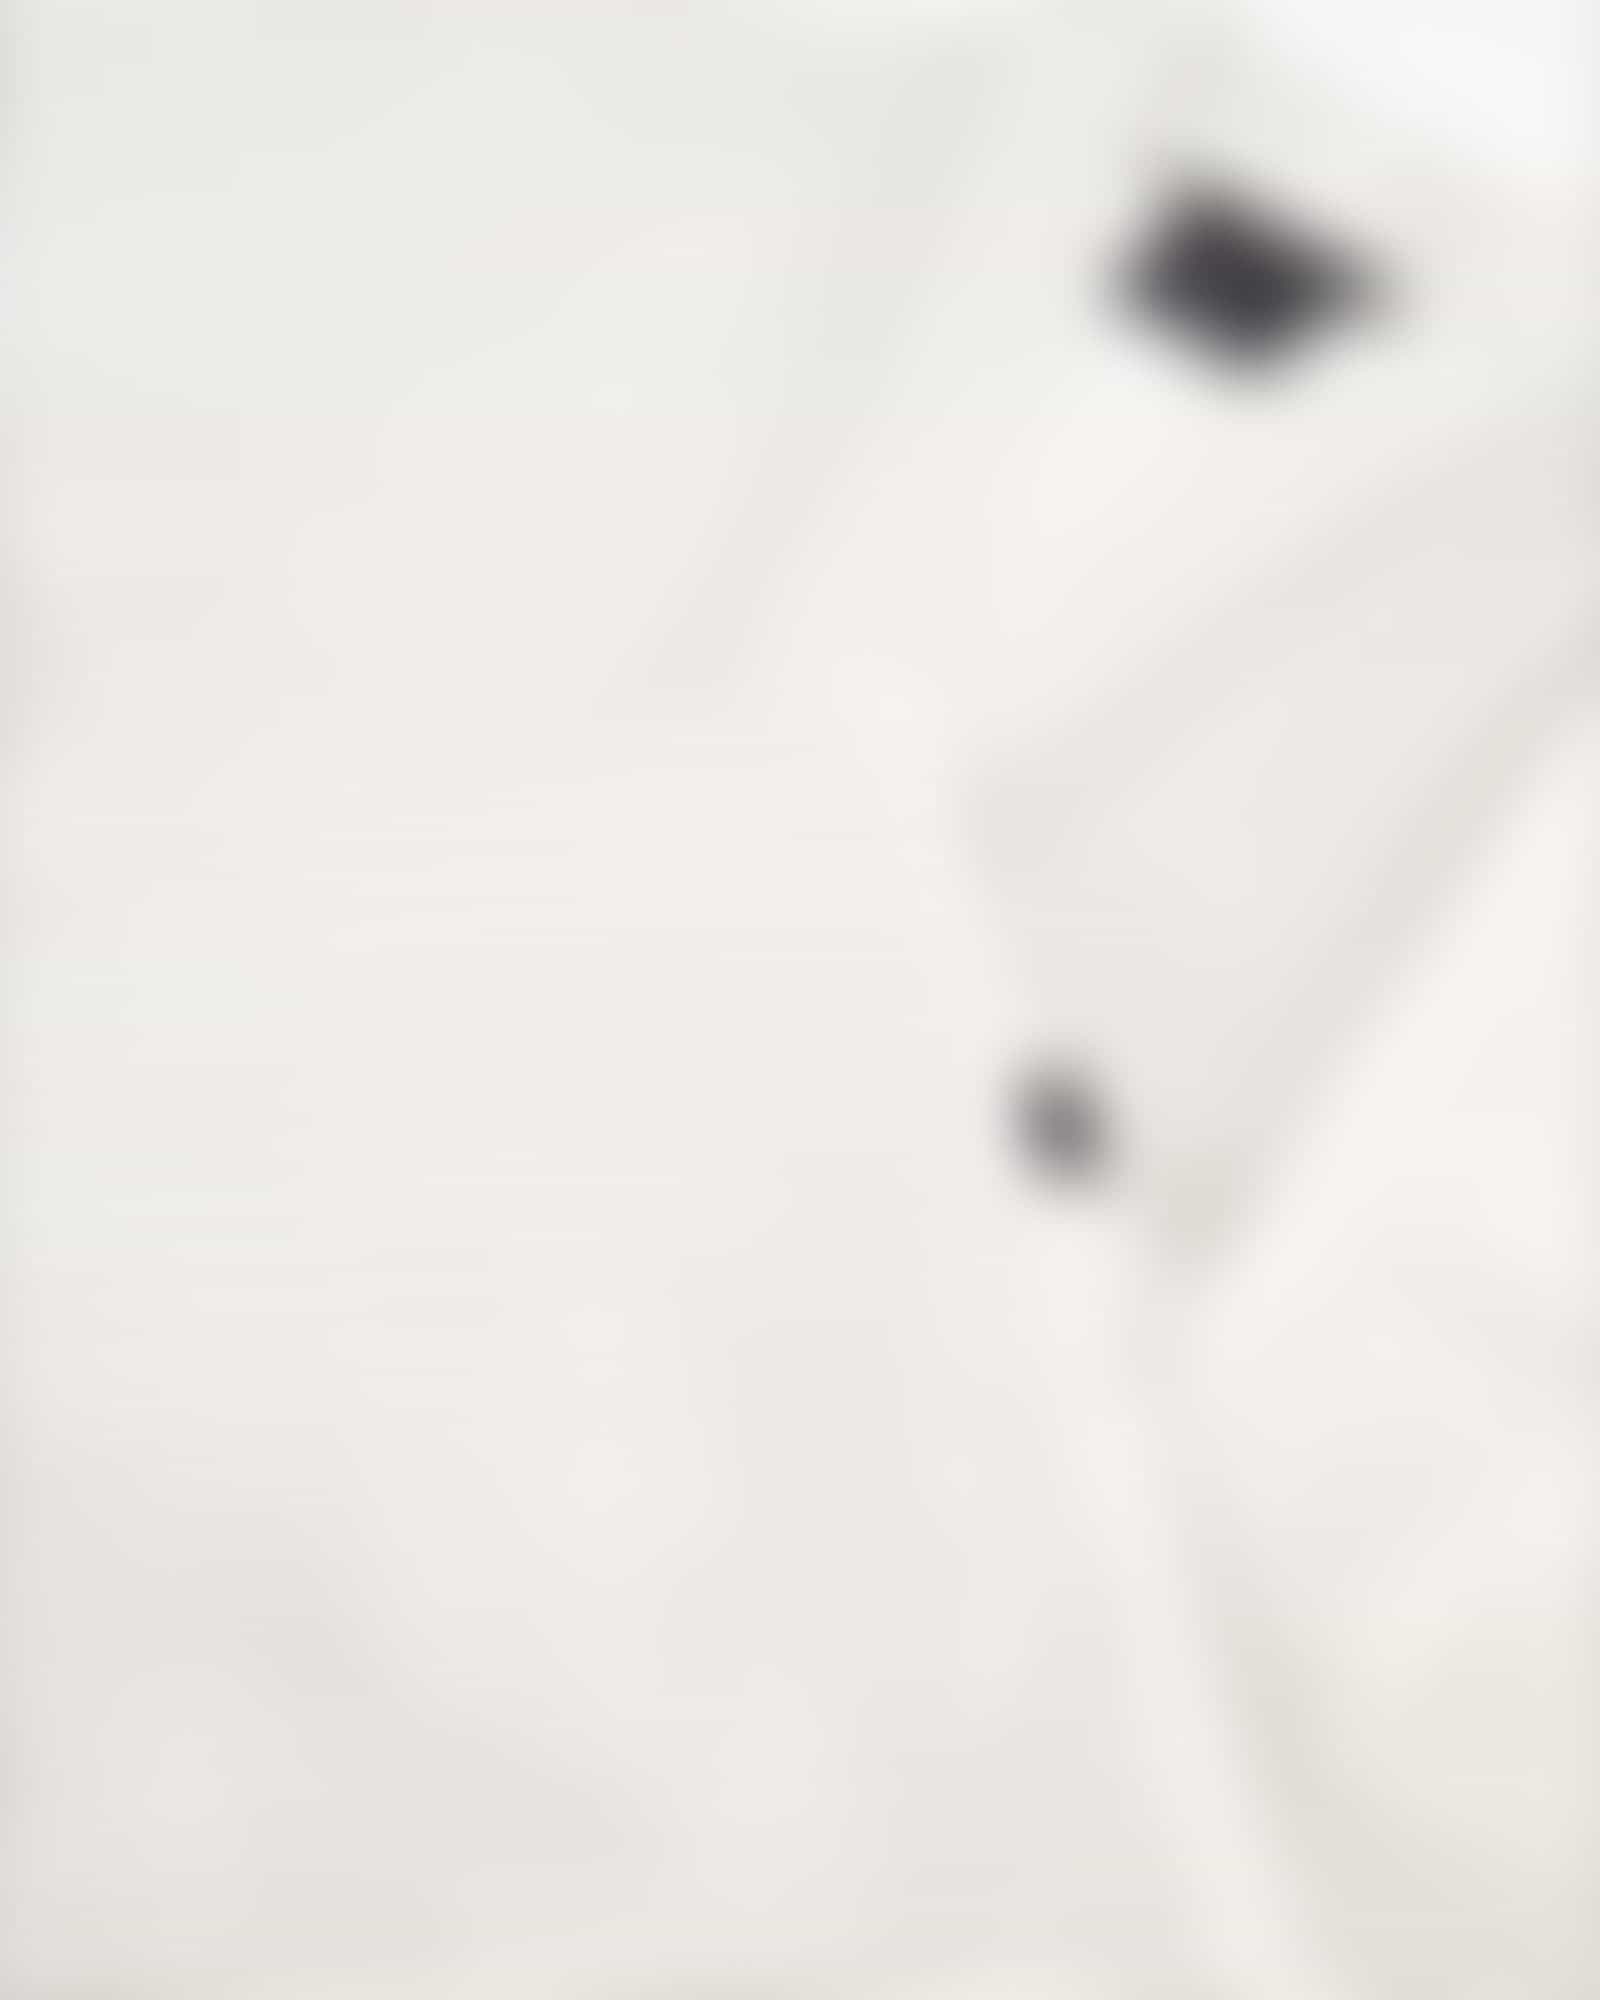 Cawö - Damen Bademantel Kurz Kimono 1214 - Farbe: weiß-silber - 76 - XS